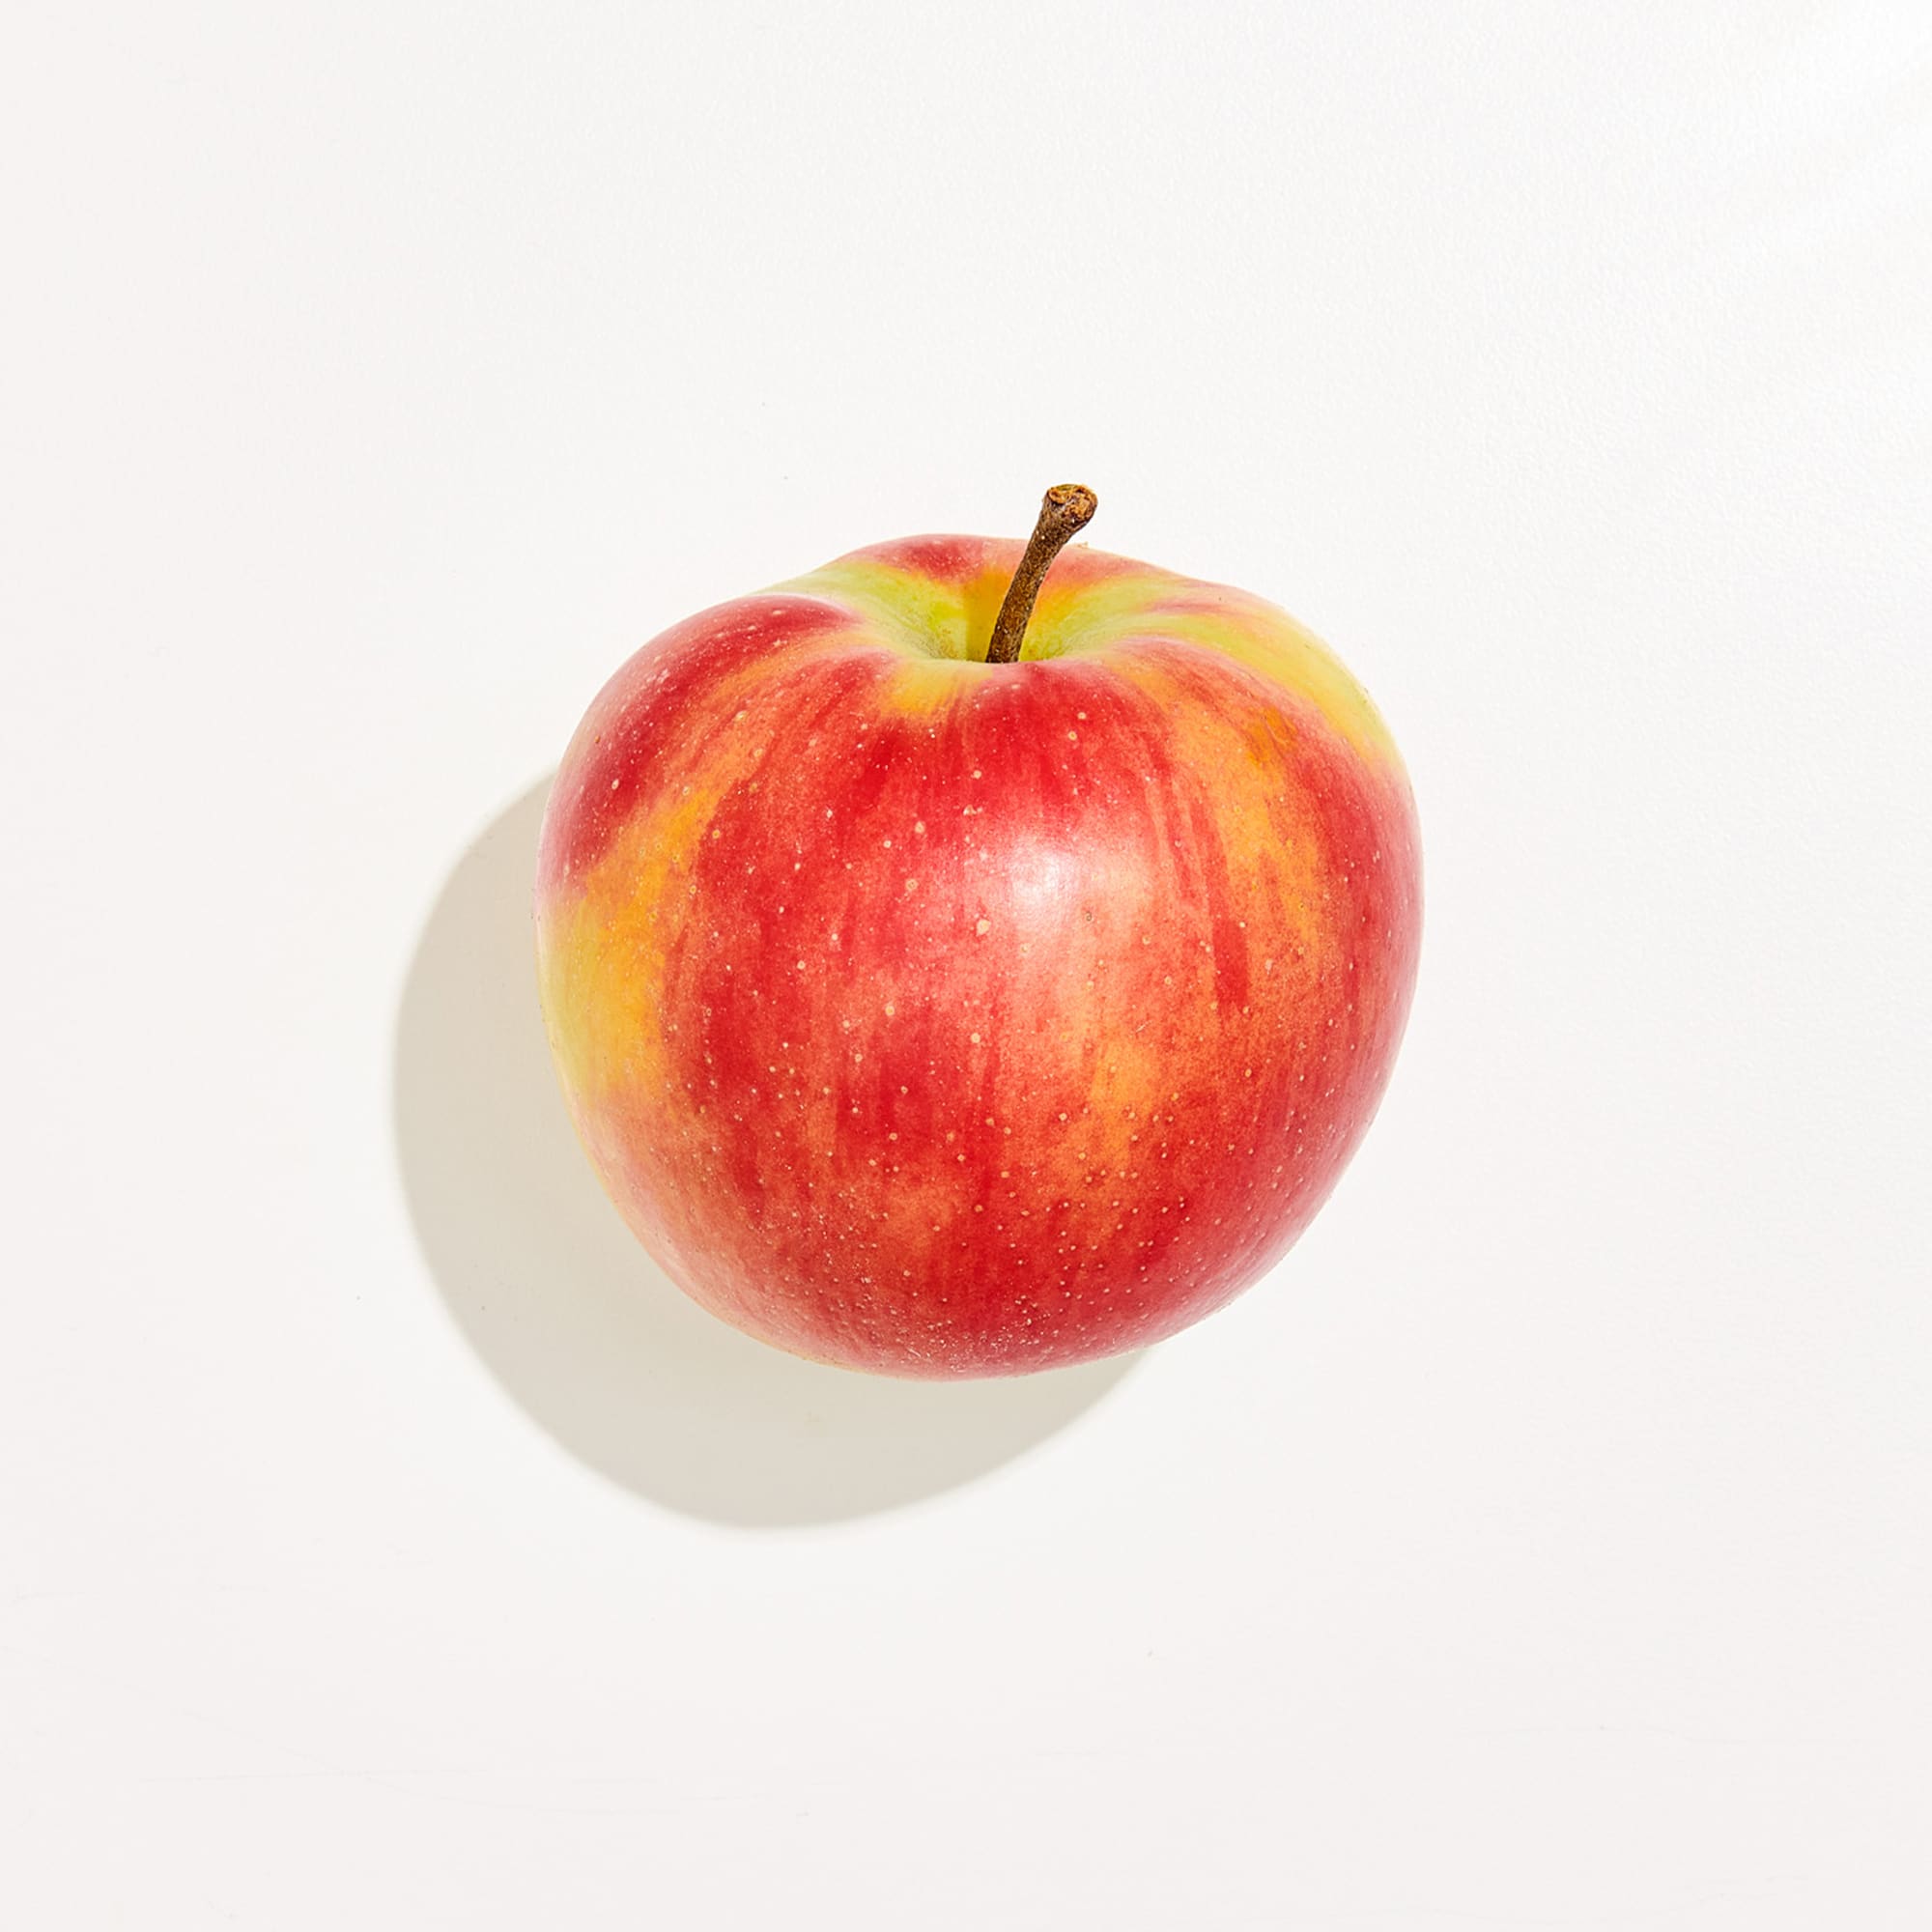 https://cdn.apartmenttherapy.info/image/upload/v1665601540/k/Design/2022-10/best-baking-apples/k-best-baking-apples-jonagold.jpg